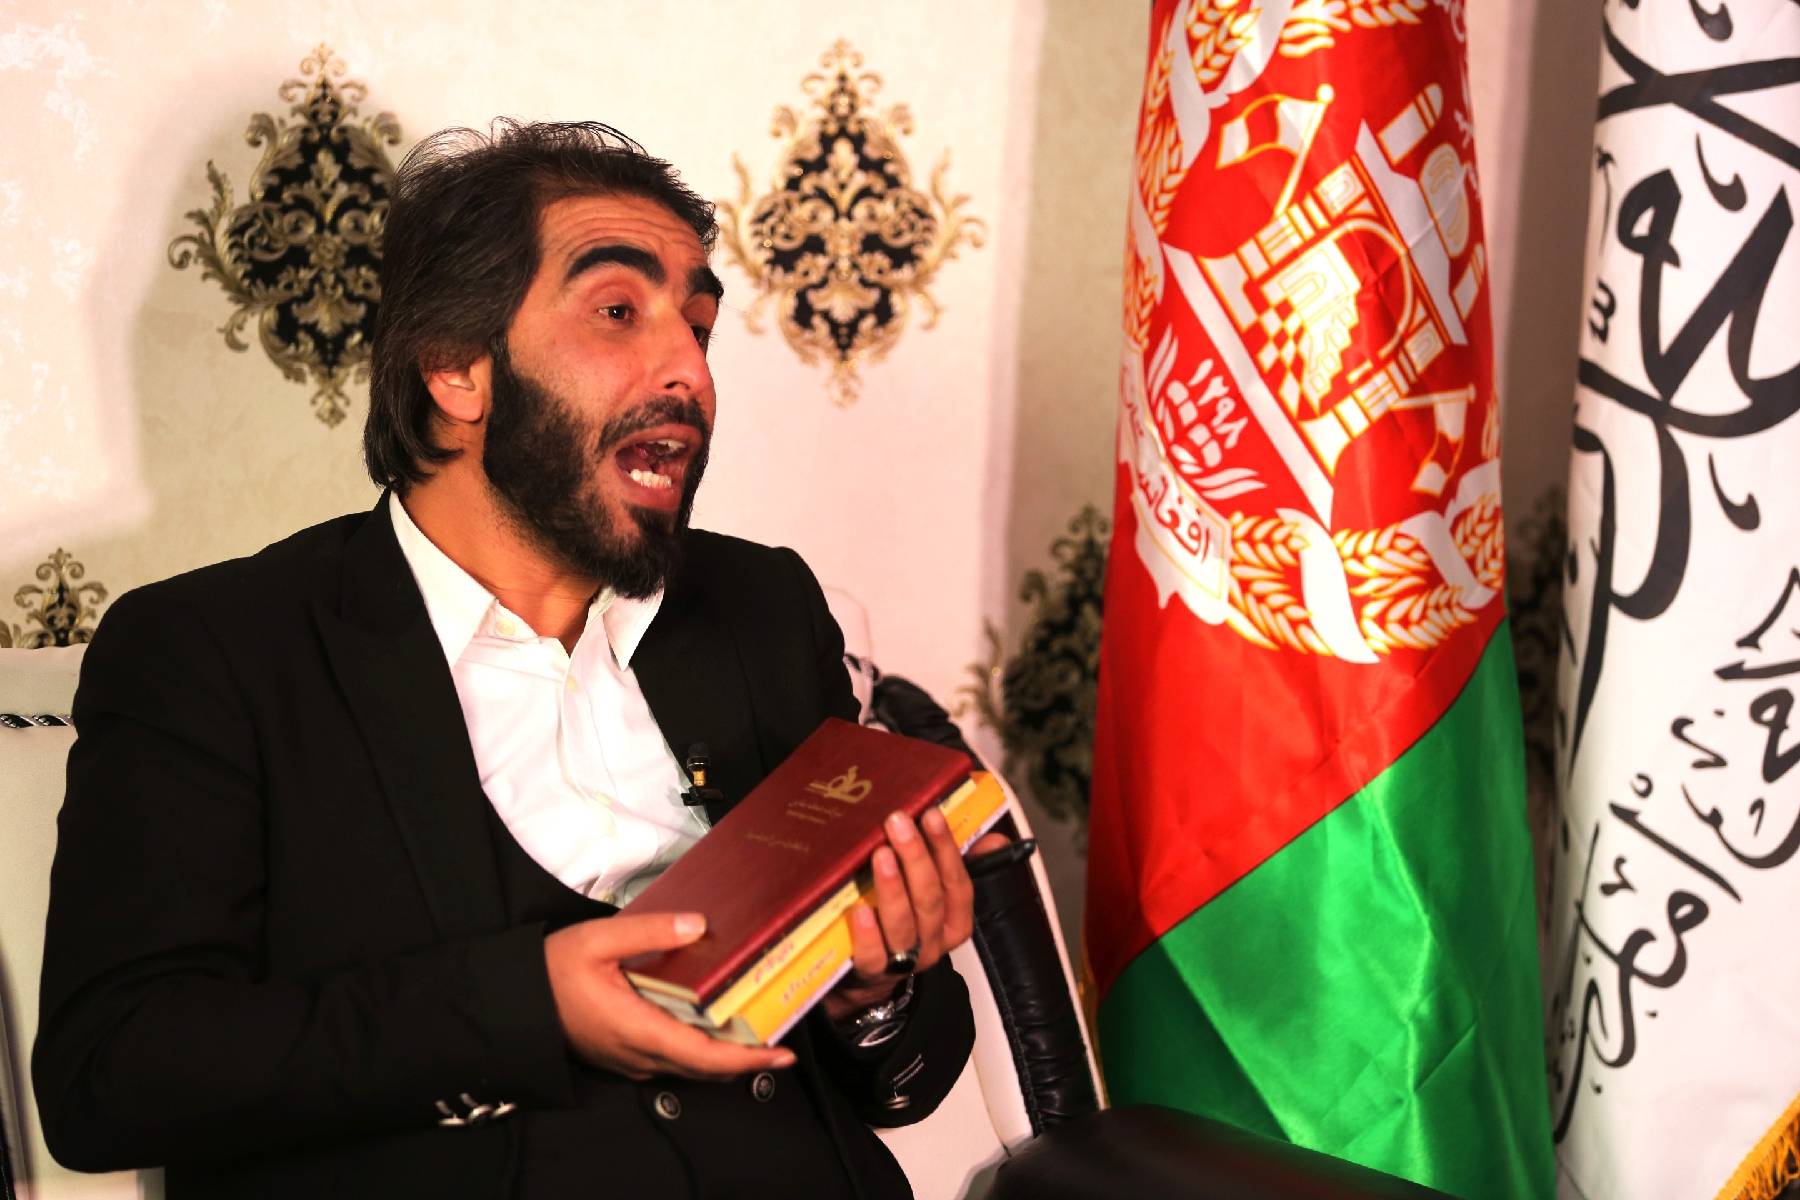 Interdiction aux femmes afghanes d'étudier: un professeur déchire ses diplômes